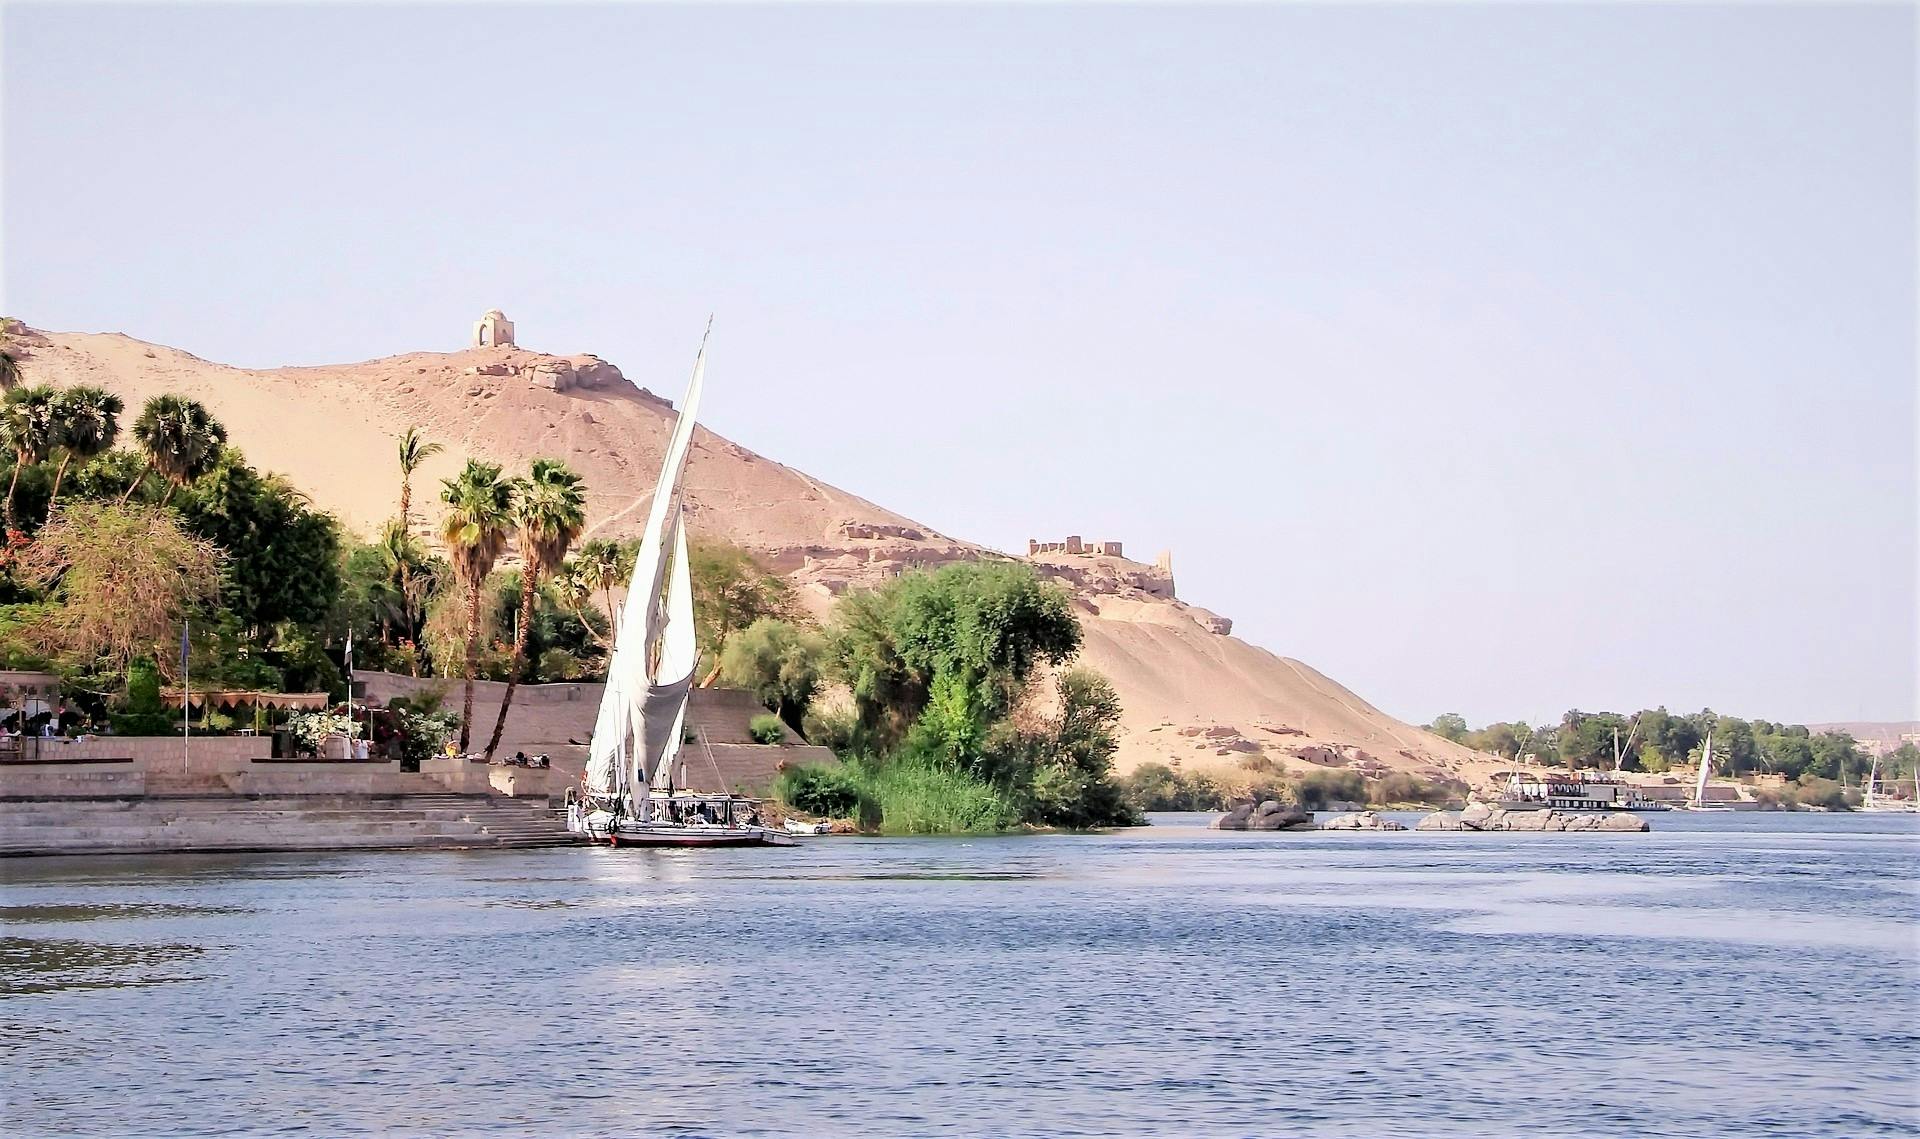 Tour in feluca dei monumenti di Assuan, incluso il pranzo nubiano